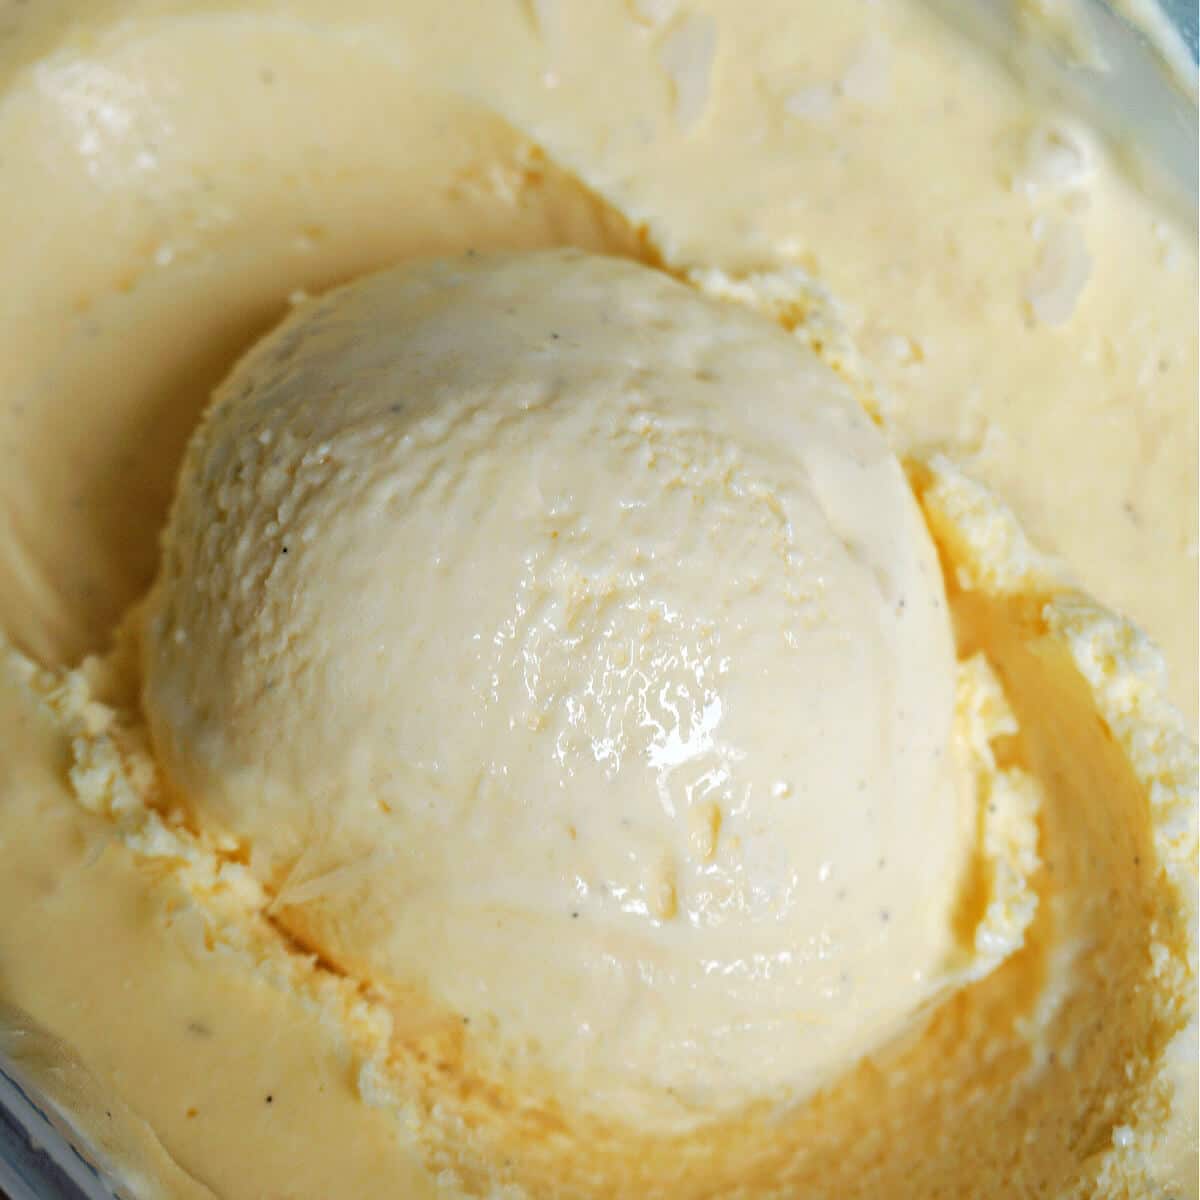 How to Make Homemade Vanilla Ice Cream, Homemade Vanilla Ice Cream Recipe, Food Network Kitchen